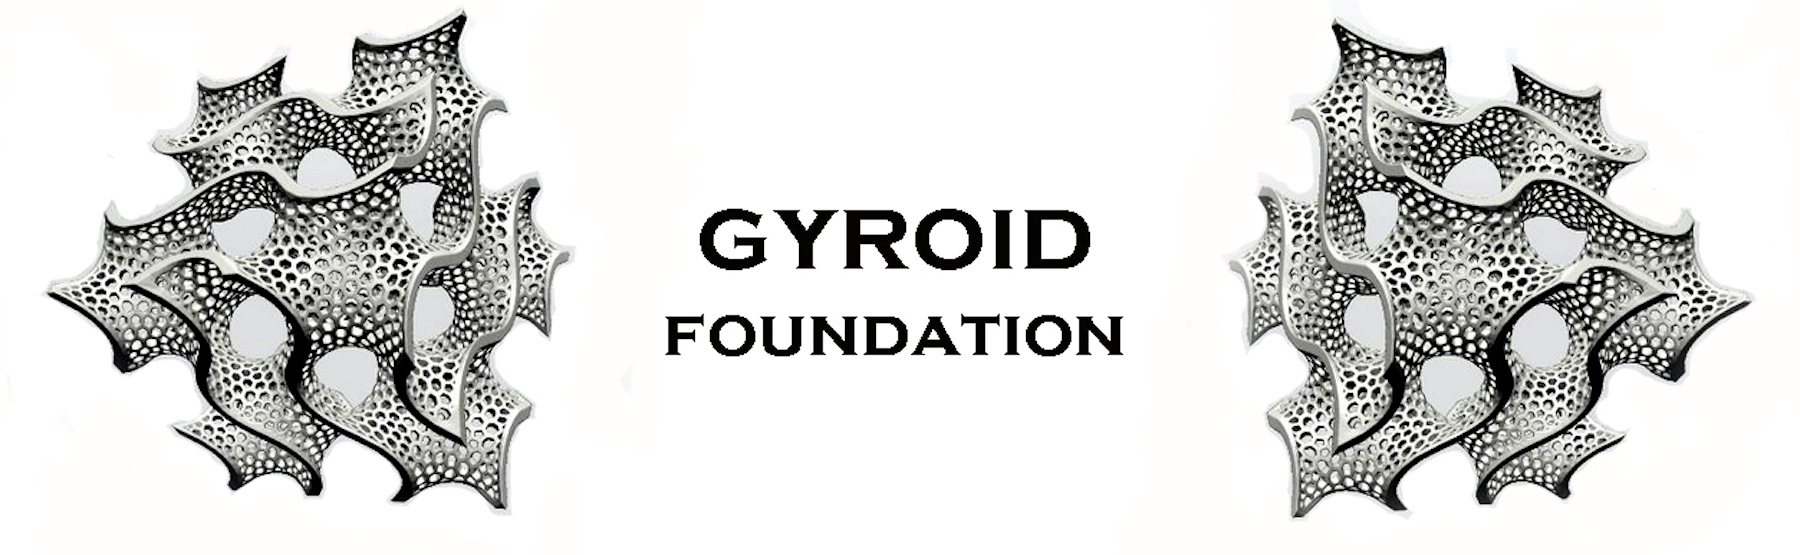 Gyroid Foundation